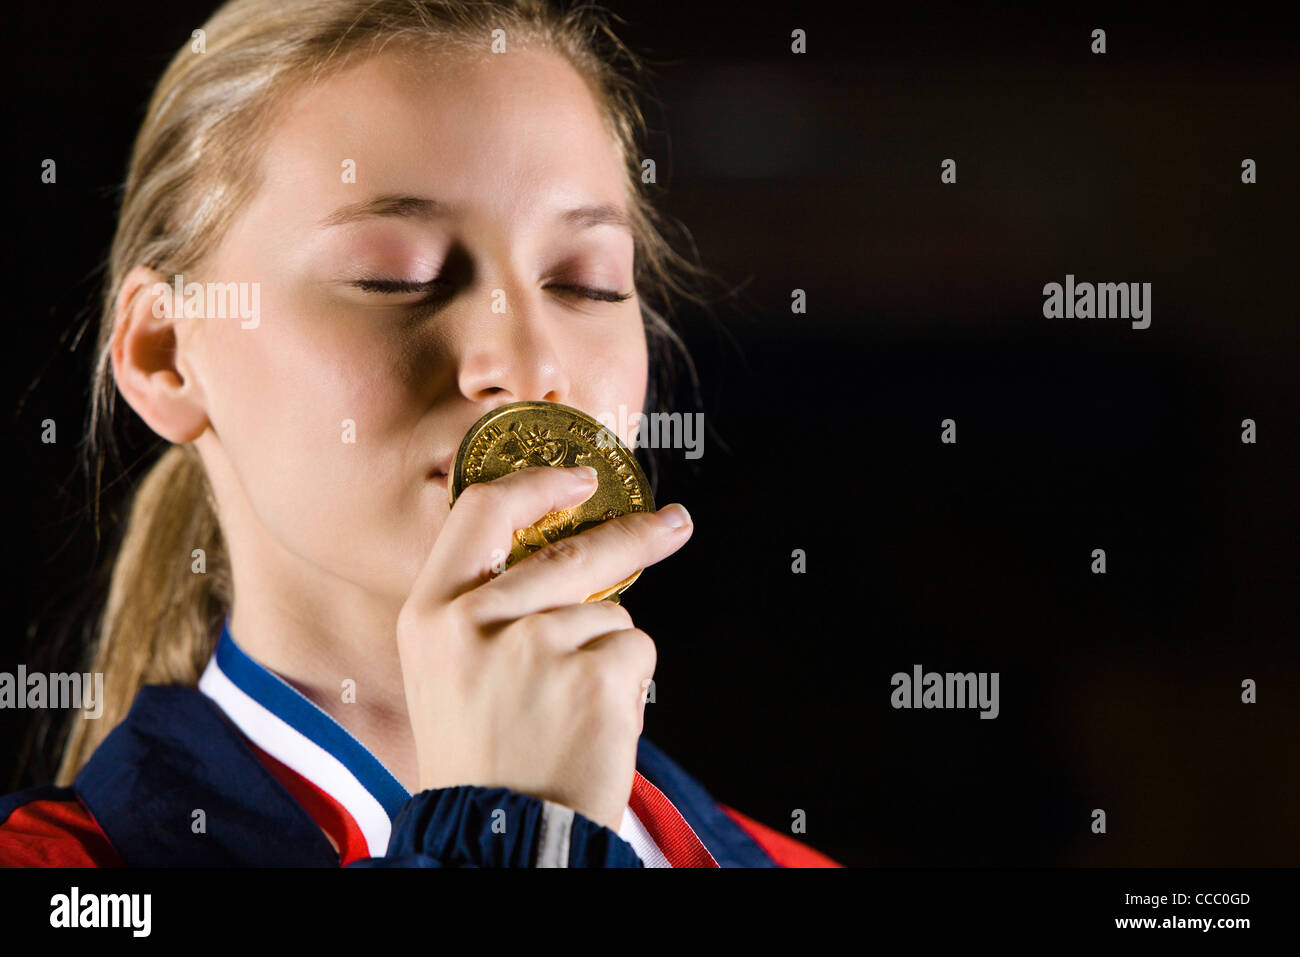 Médaille d'or de l'athlète féminine s'embrasser, portrait Banque D'Images